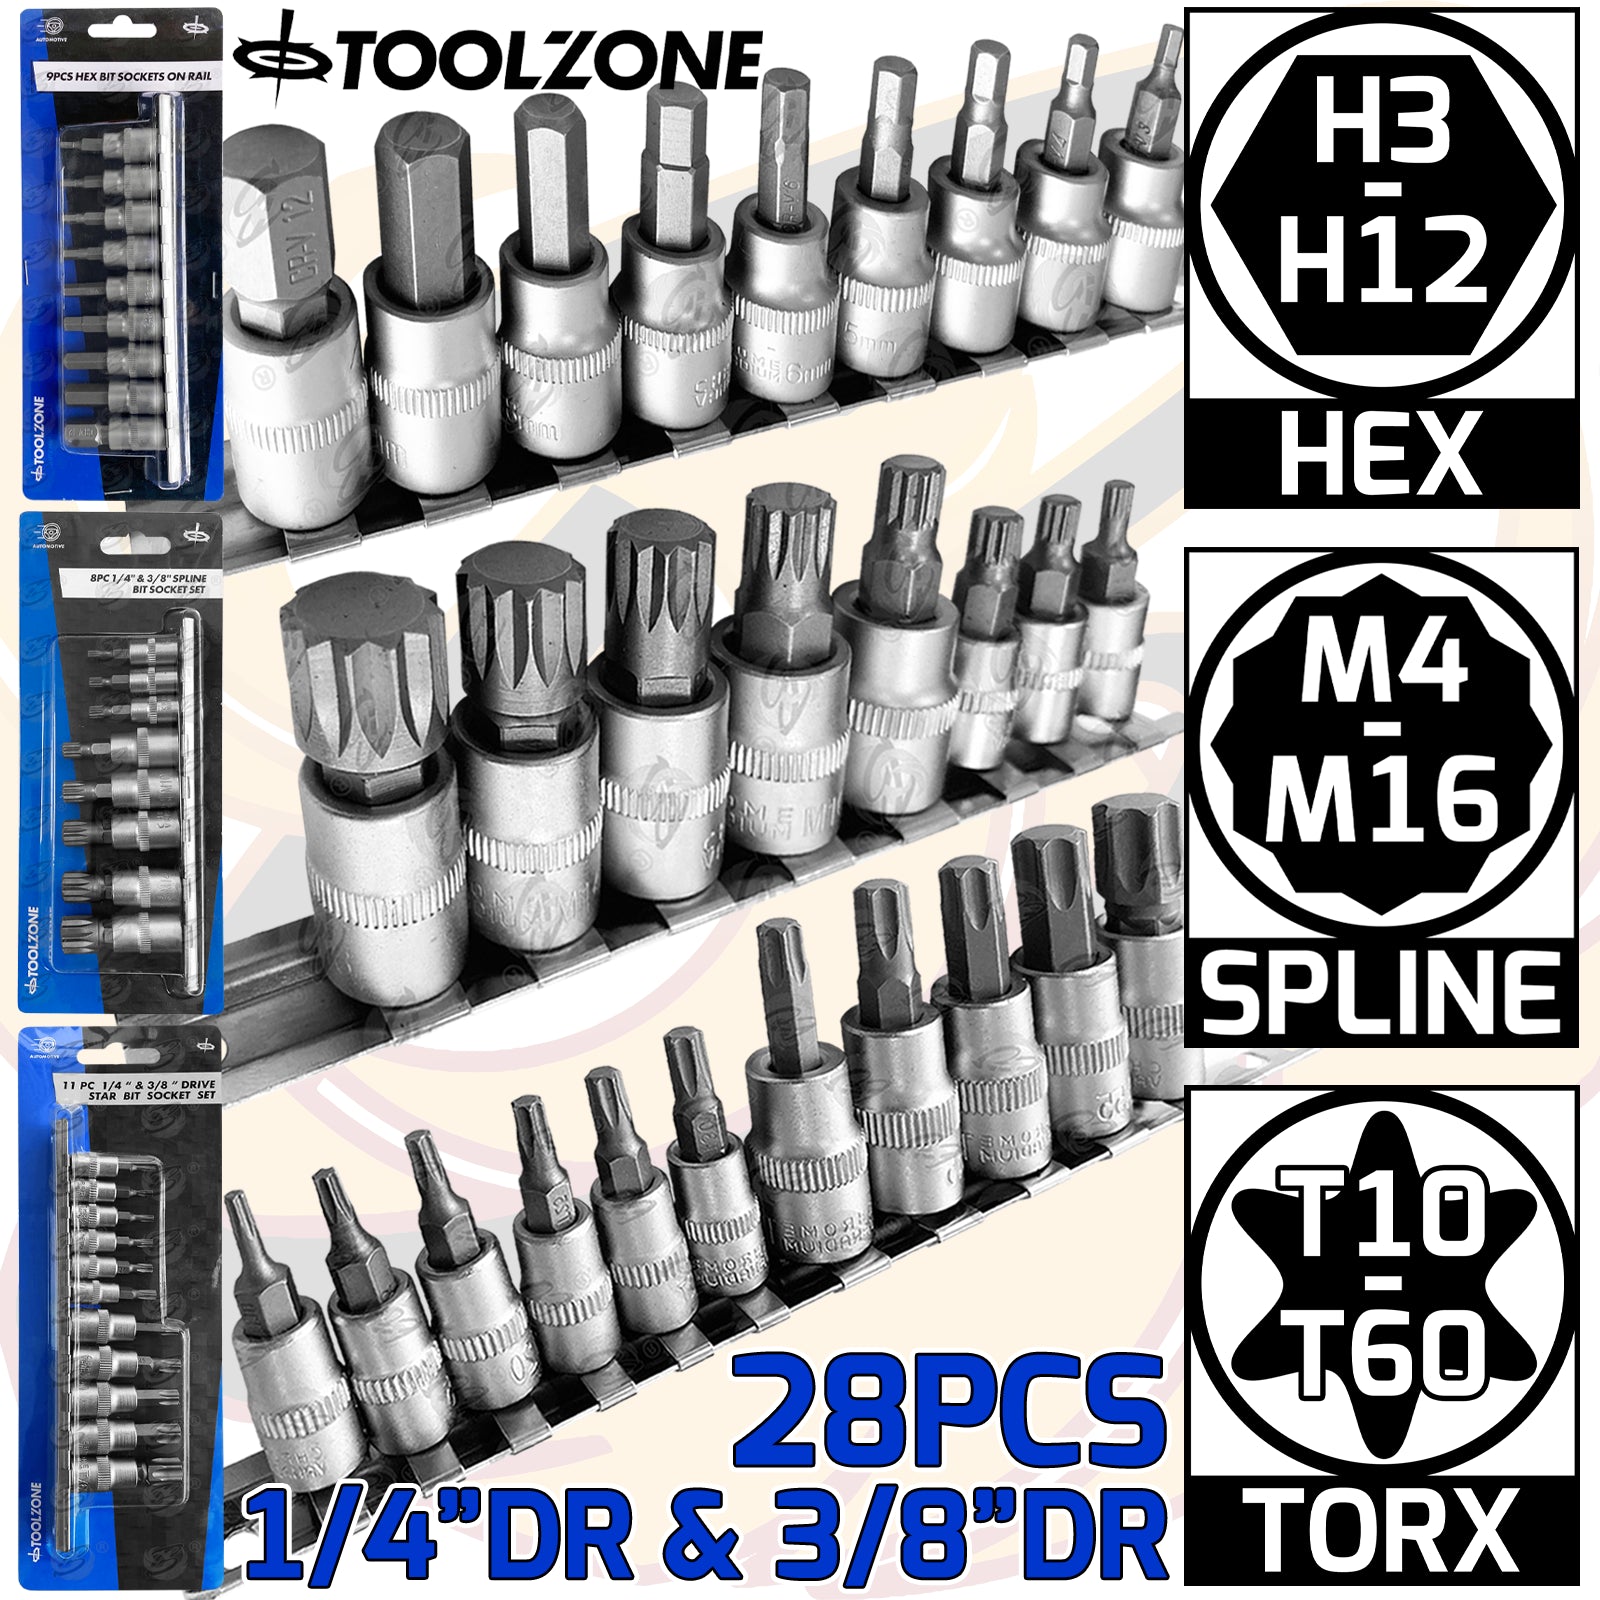 TOOLZONE 28PCS 1/4" & 3/8" DRIVE HEX - TORX - SPLINE BIT SOCKETS